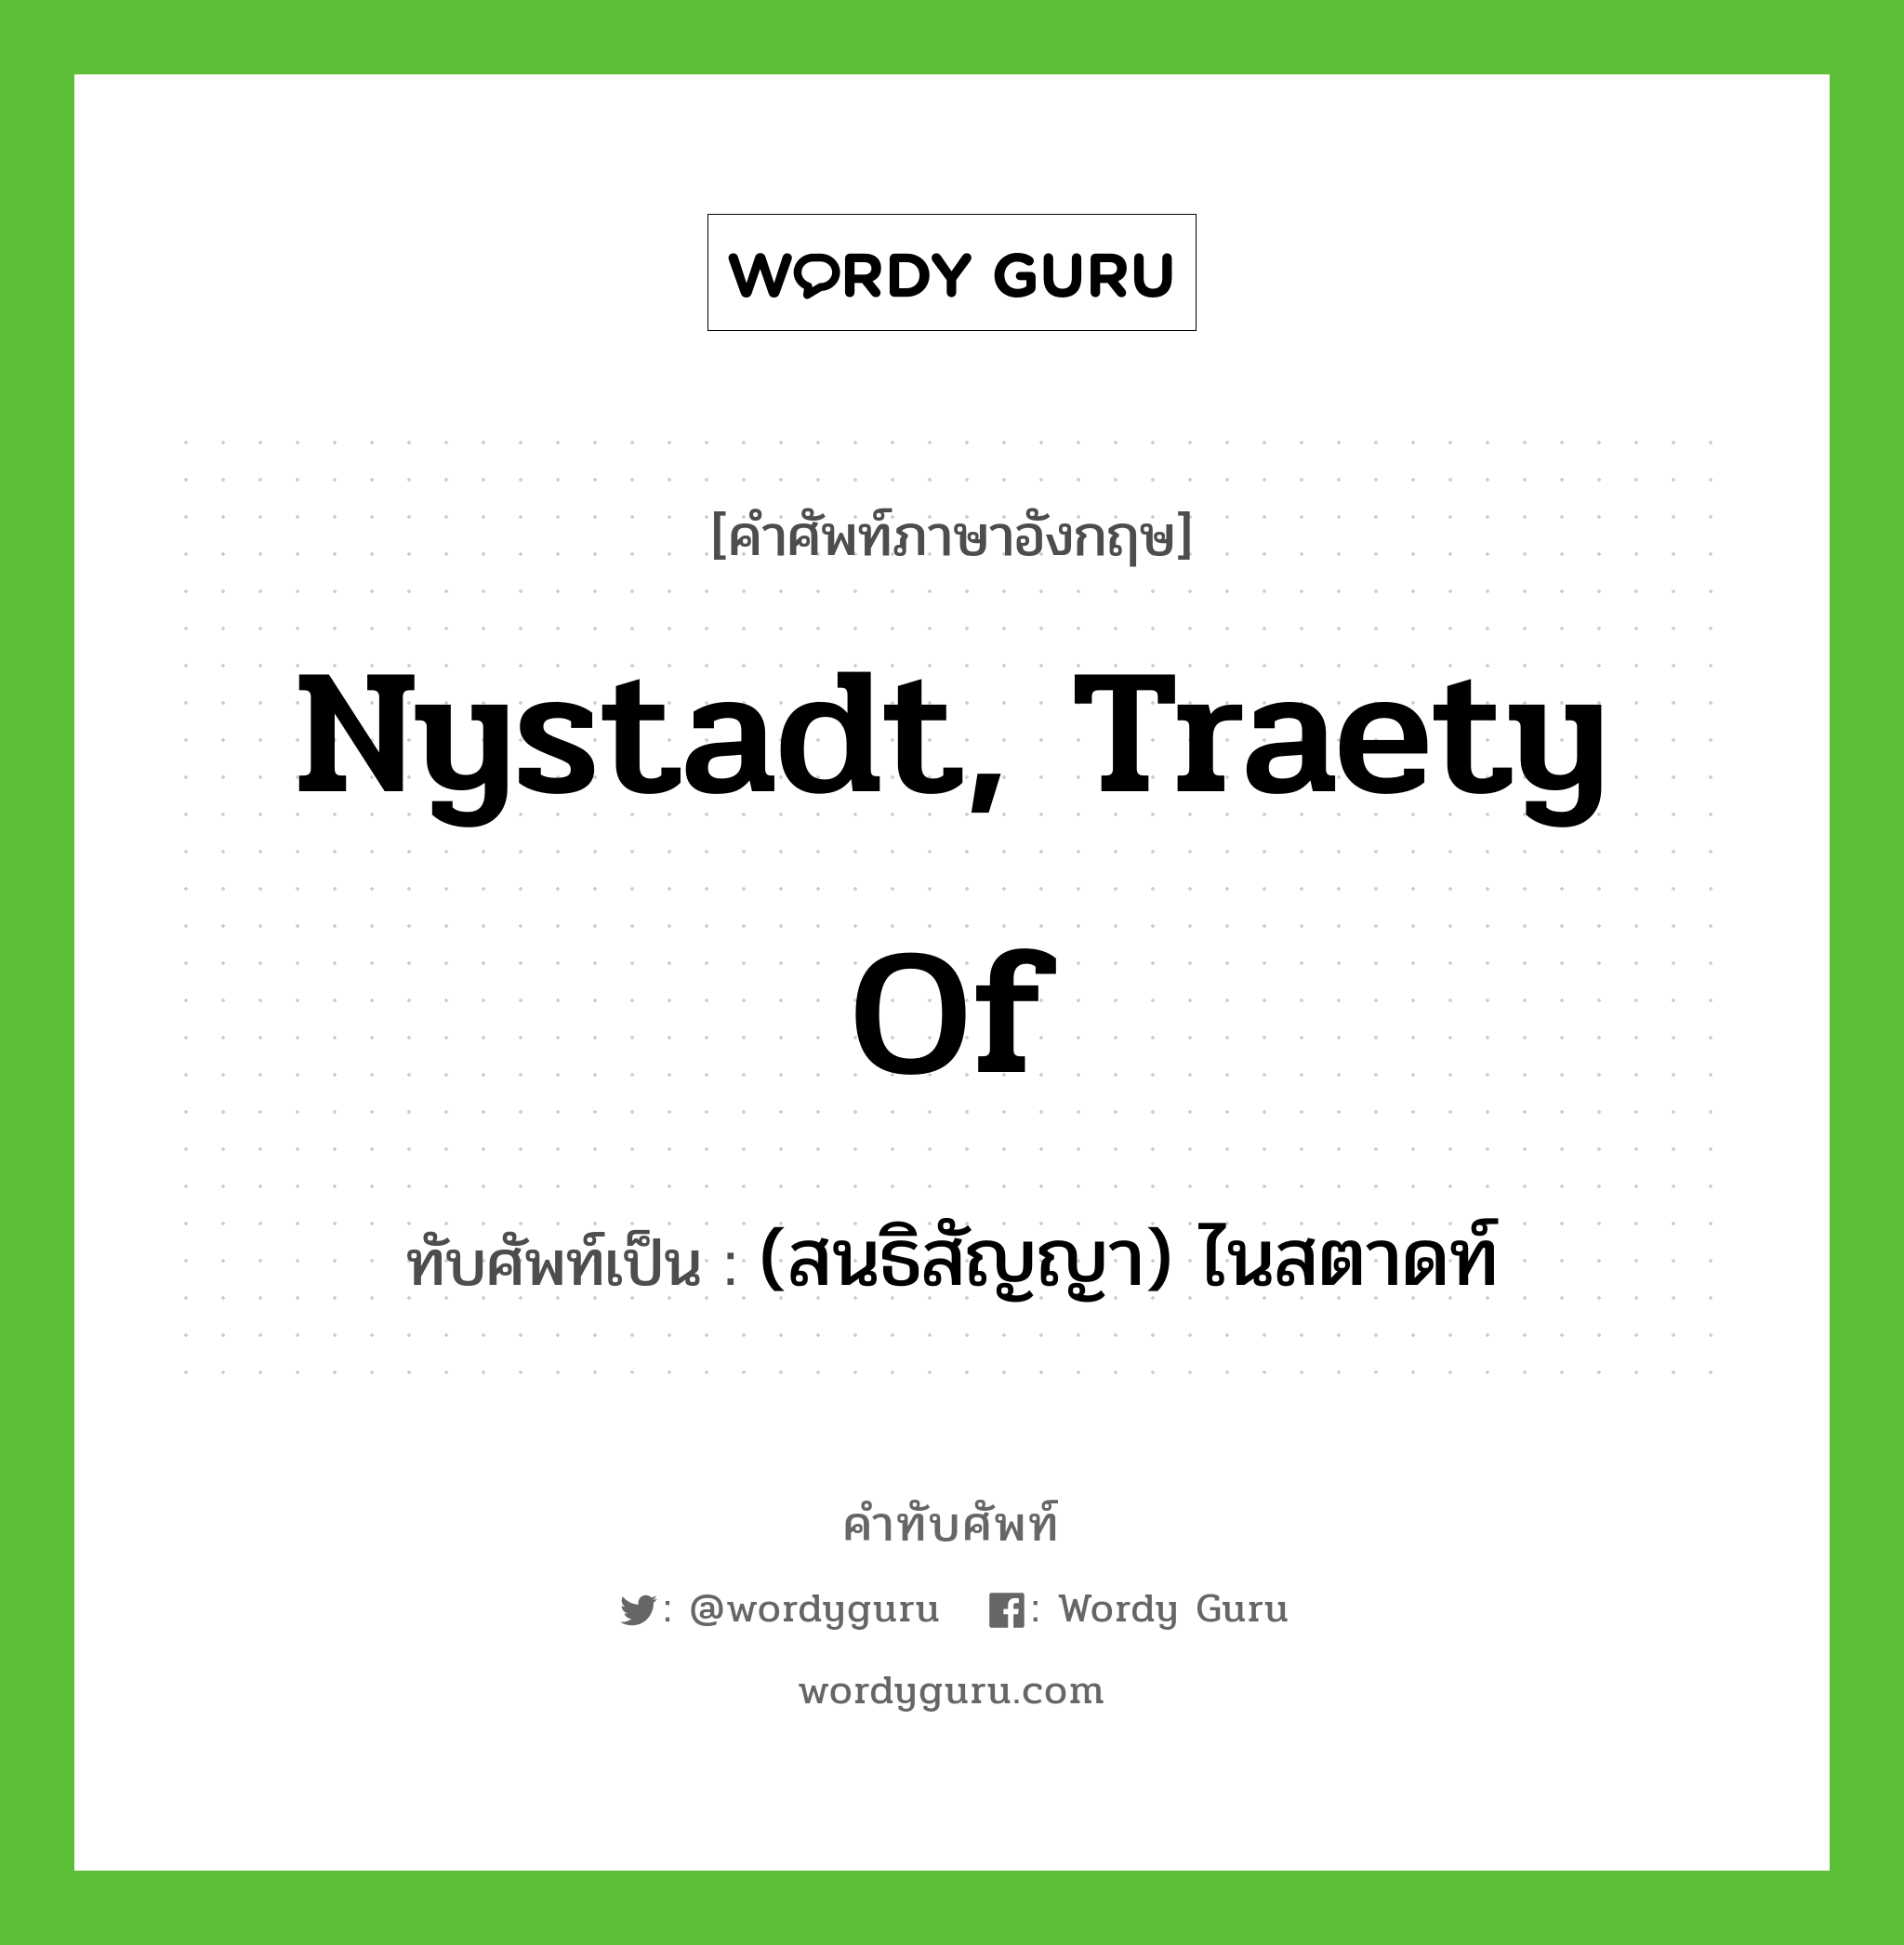 Nystadt, Traety of เขียนเป็นคำไทยว่าอะไร?, คำศัพท์ภาษาอังกฤษ Nystadt, Traety of ทับศัพท์เป็น (สนธิสัญญา) ไนสตาดท์